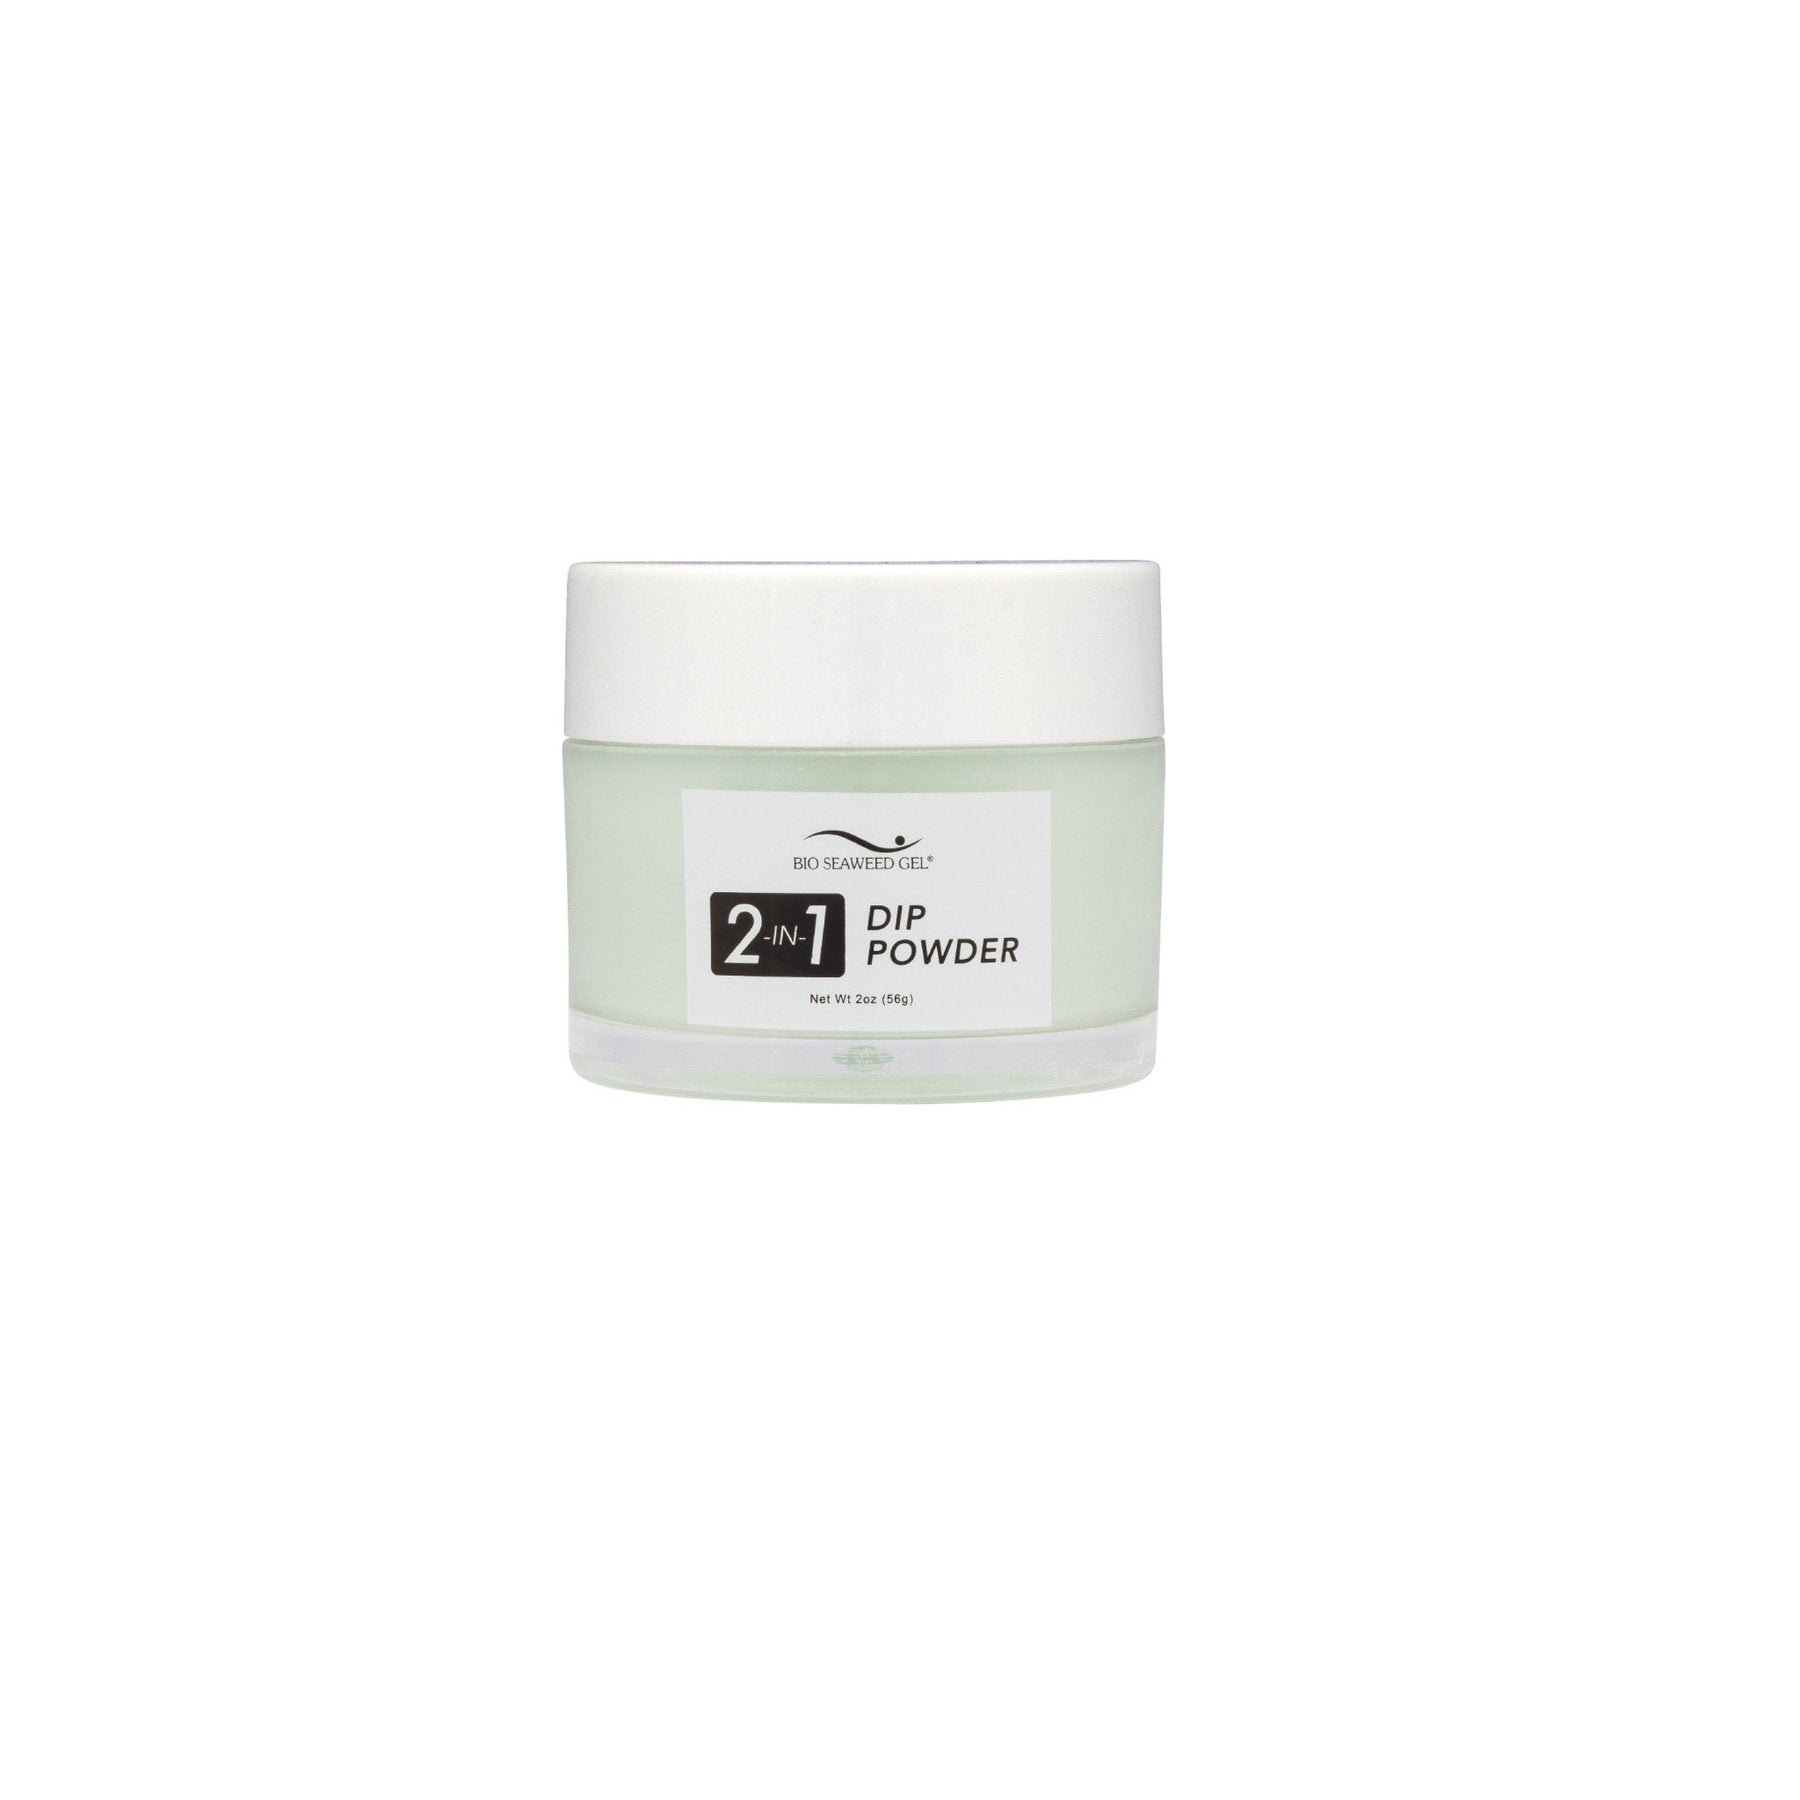 16 SEAFOAM | Bio Seaweed Gel® Dip Powder System - CM Nails & Beauty Supply